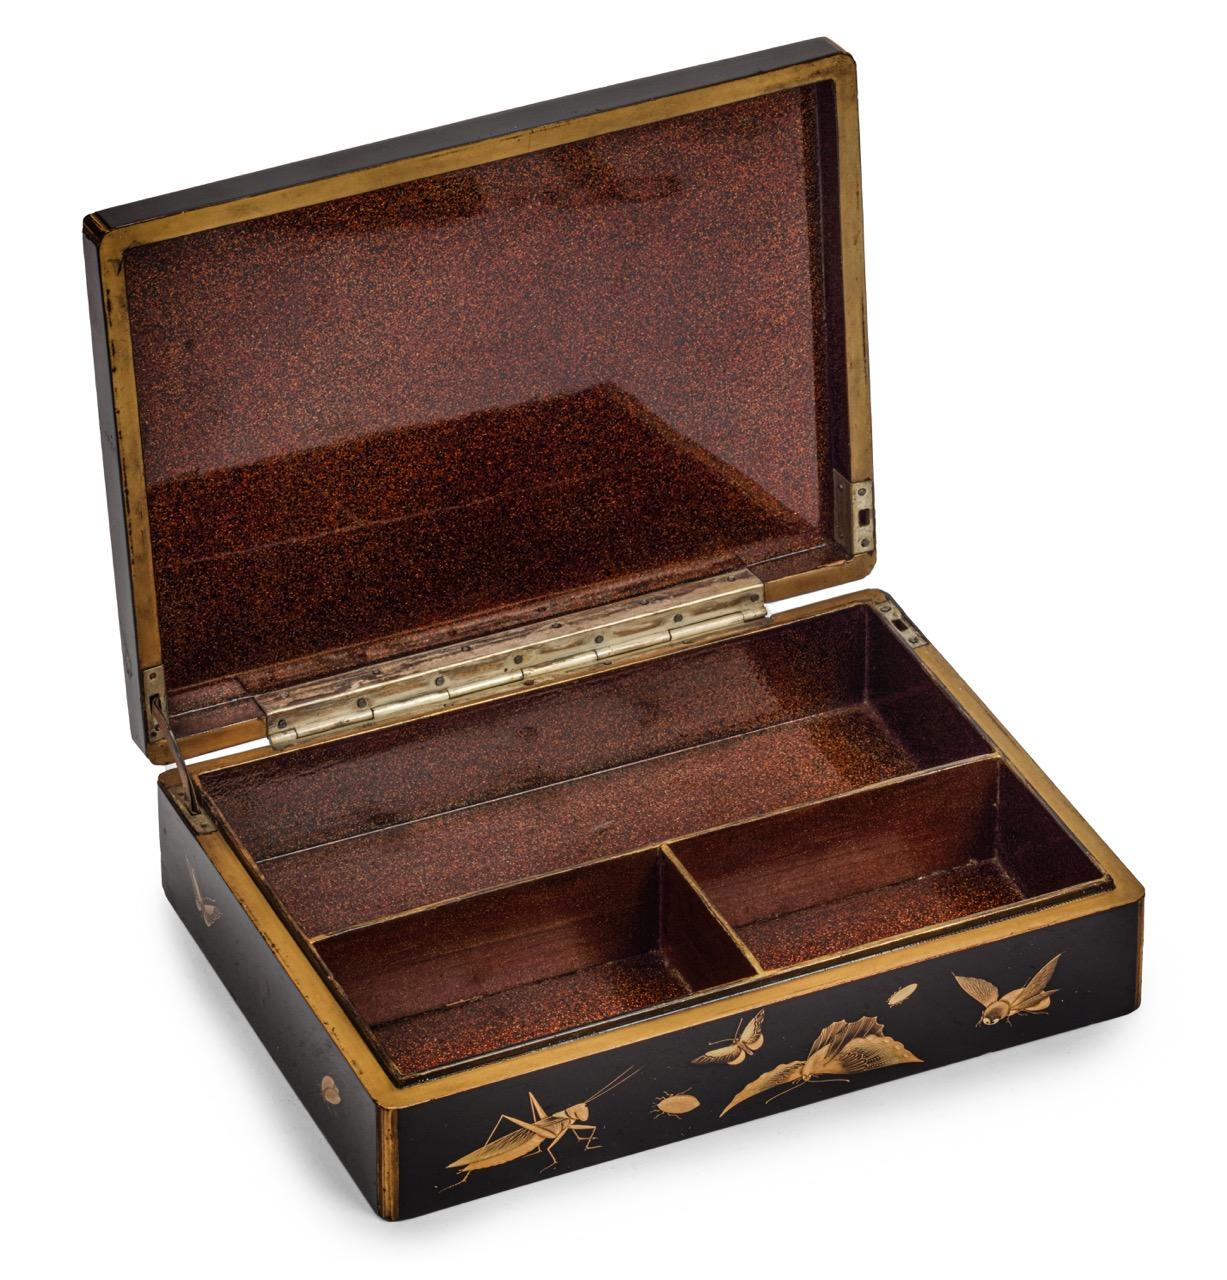 Meiji-Periode, ca. 1873-1887

Die schwarz lackierte Schachtel ist mit Maki-e- und Hiramaki-e-Gold verziert. Auf dem Deckel sind ein Gebäudekomplex im europäischen Stil und mehrere japanische und europäische Figuren abgebildet, die im Vordergrund